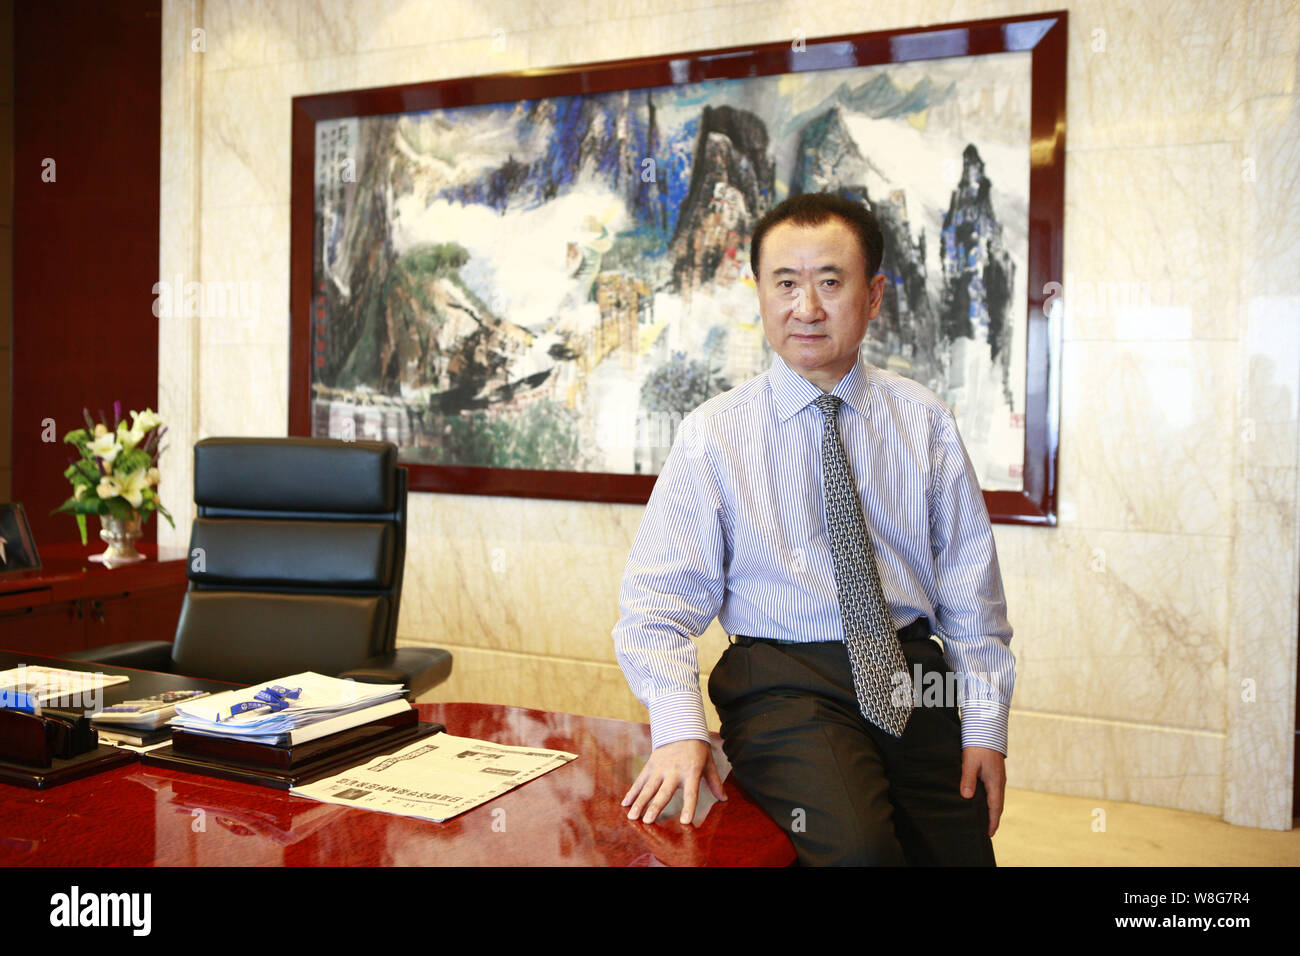 --FILE--Wang Jianlin, Président de Dalian Wanda Group, est photographié au cours d'une entrevue au siège de Wanda Group à Beijing, Chine, 29 Août Banque D'Images